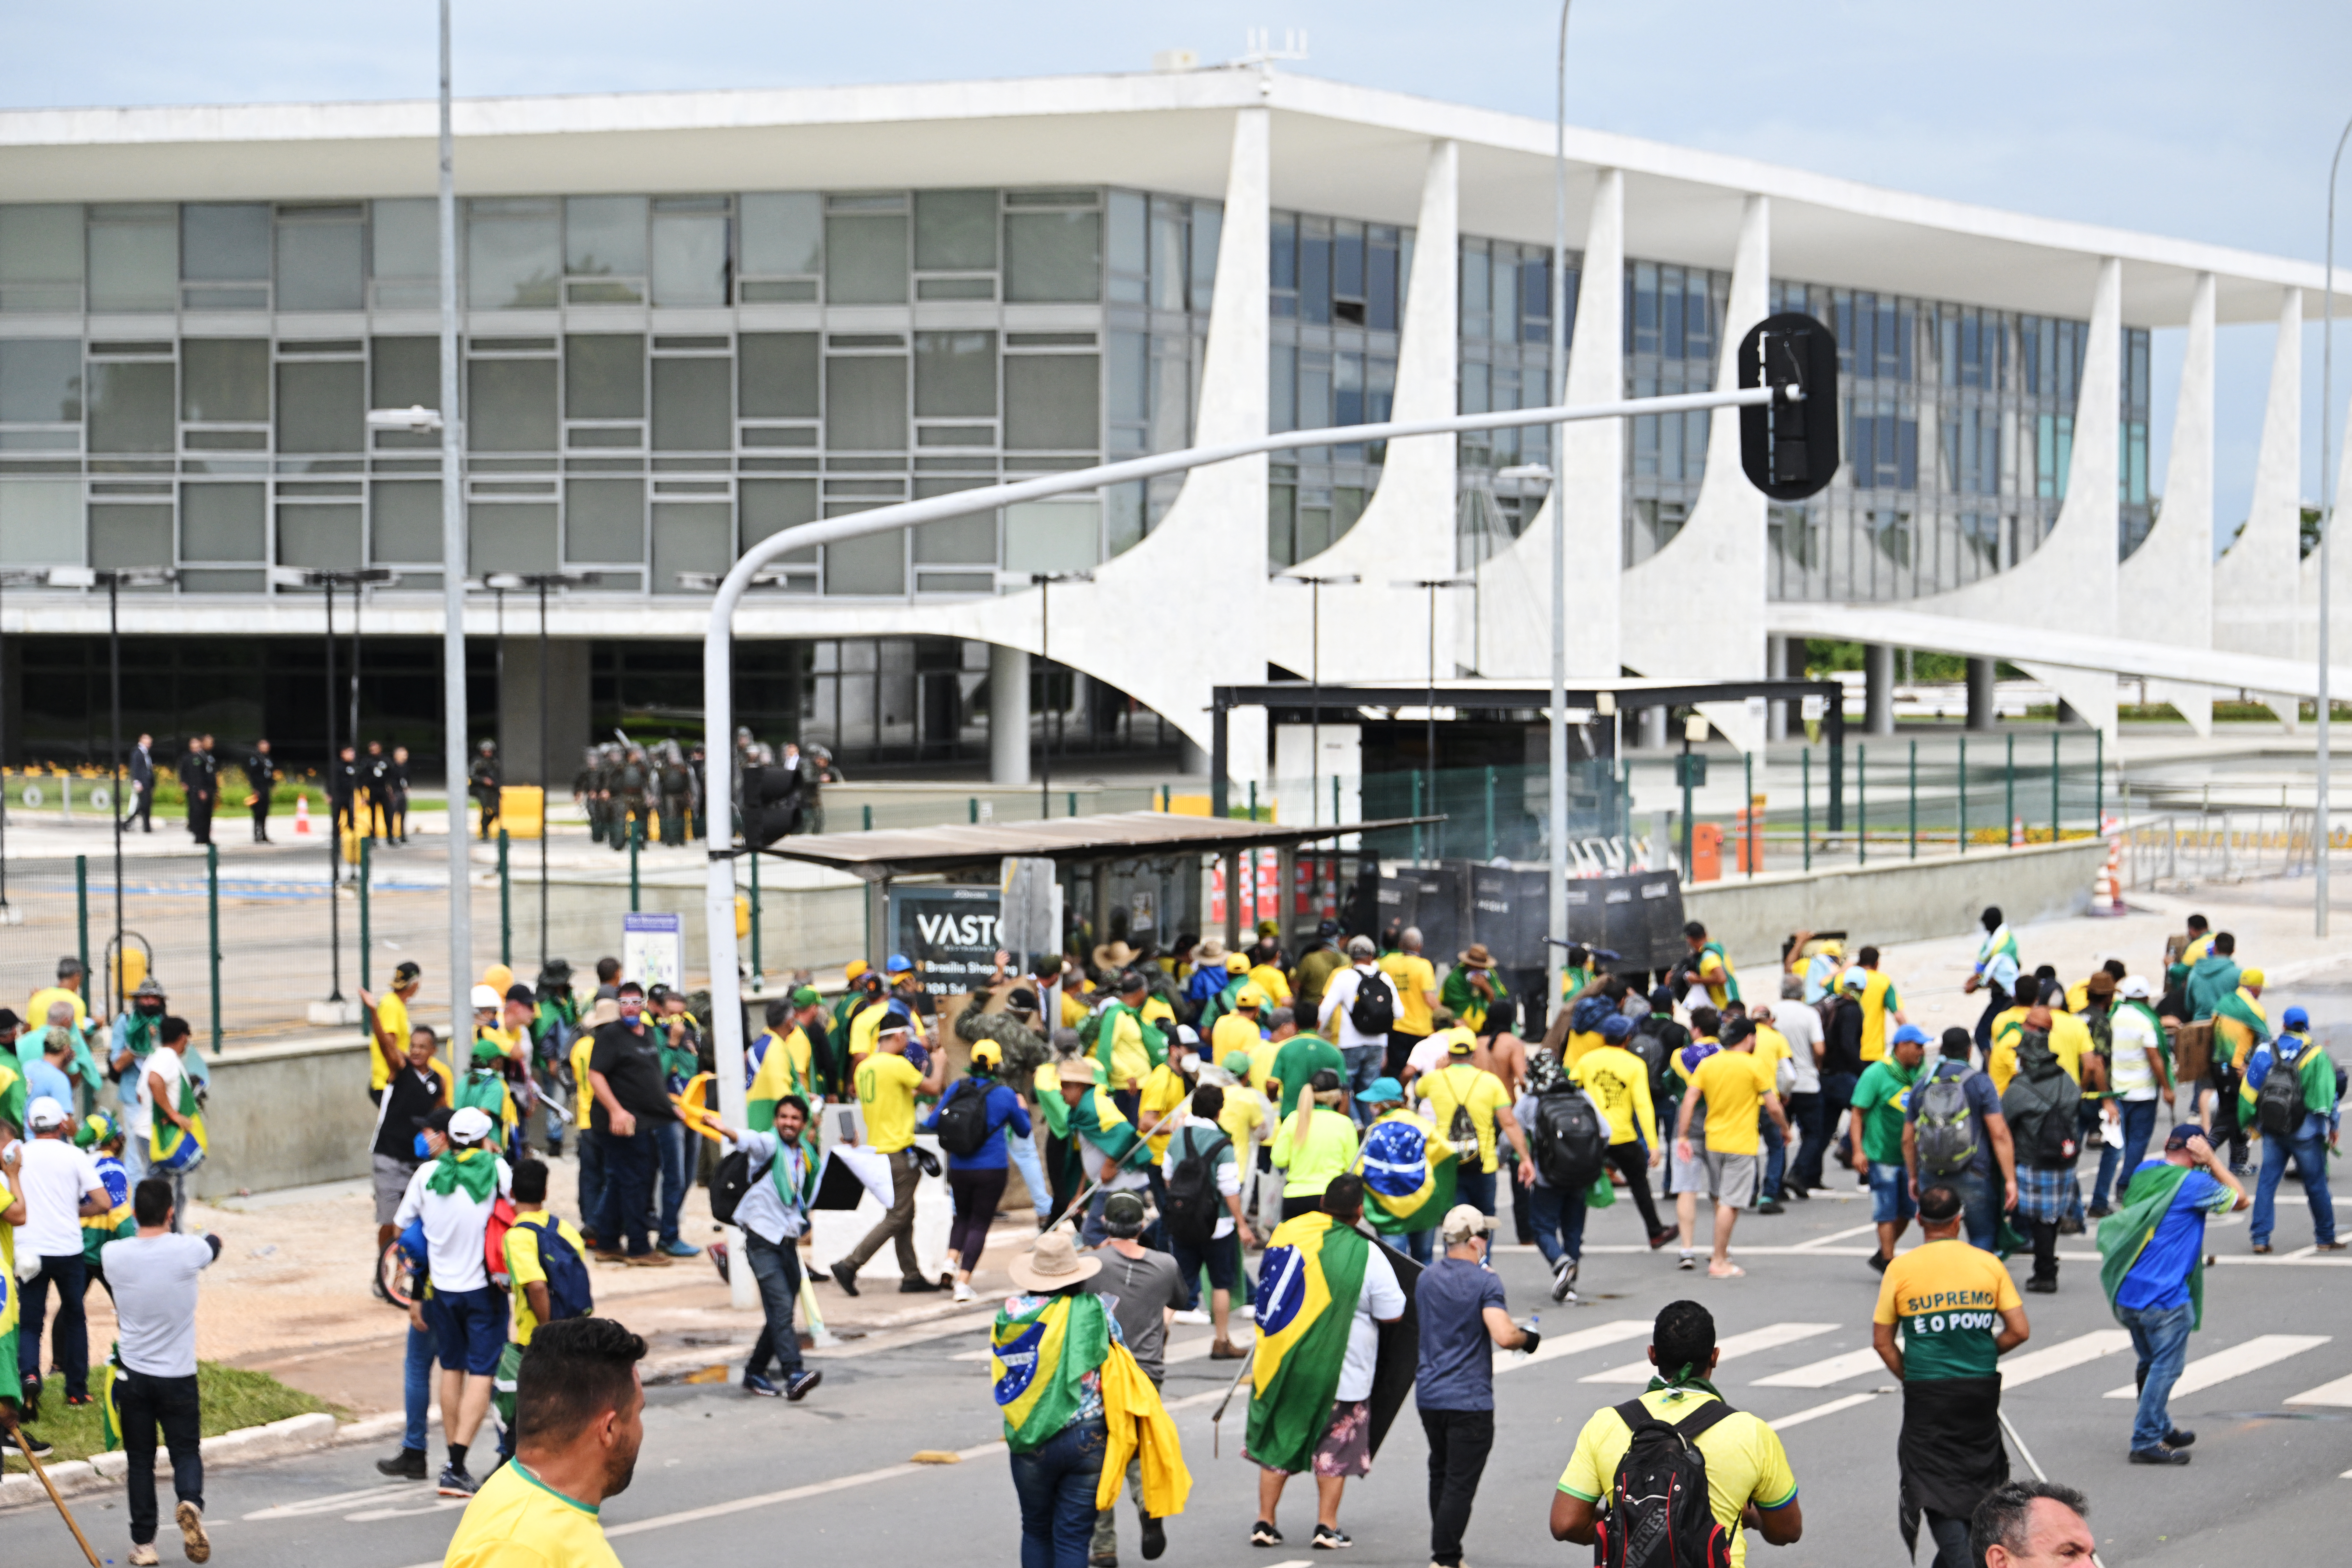 Seguidores de Bolsonaro invaden el Congreso brasileño en manifestación contra Lula (VIDEOS)